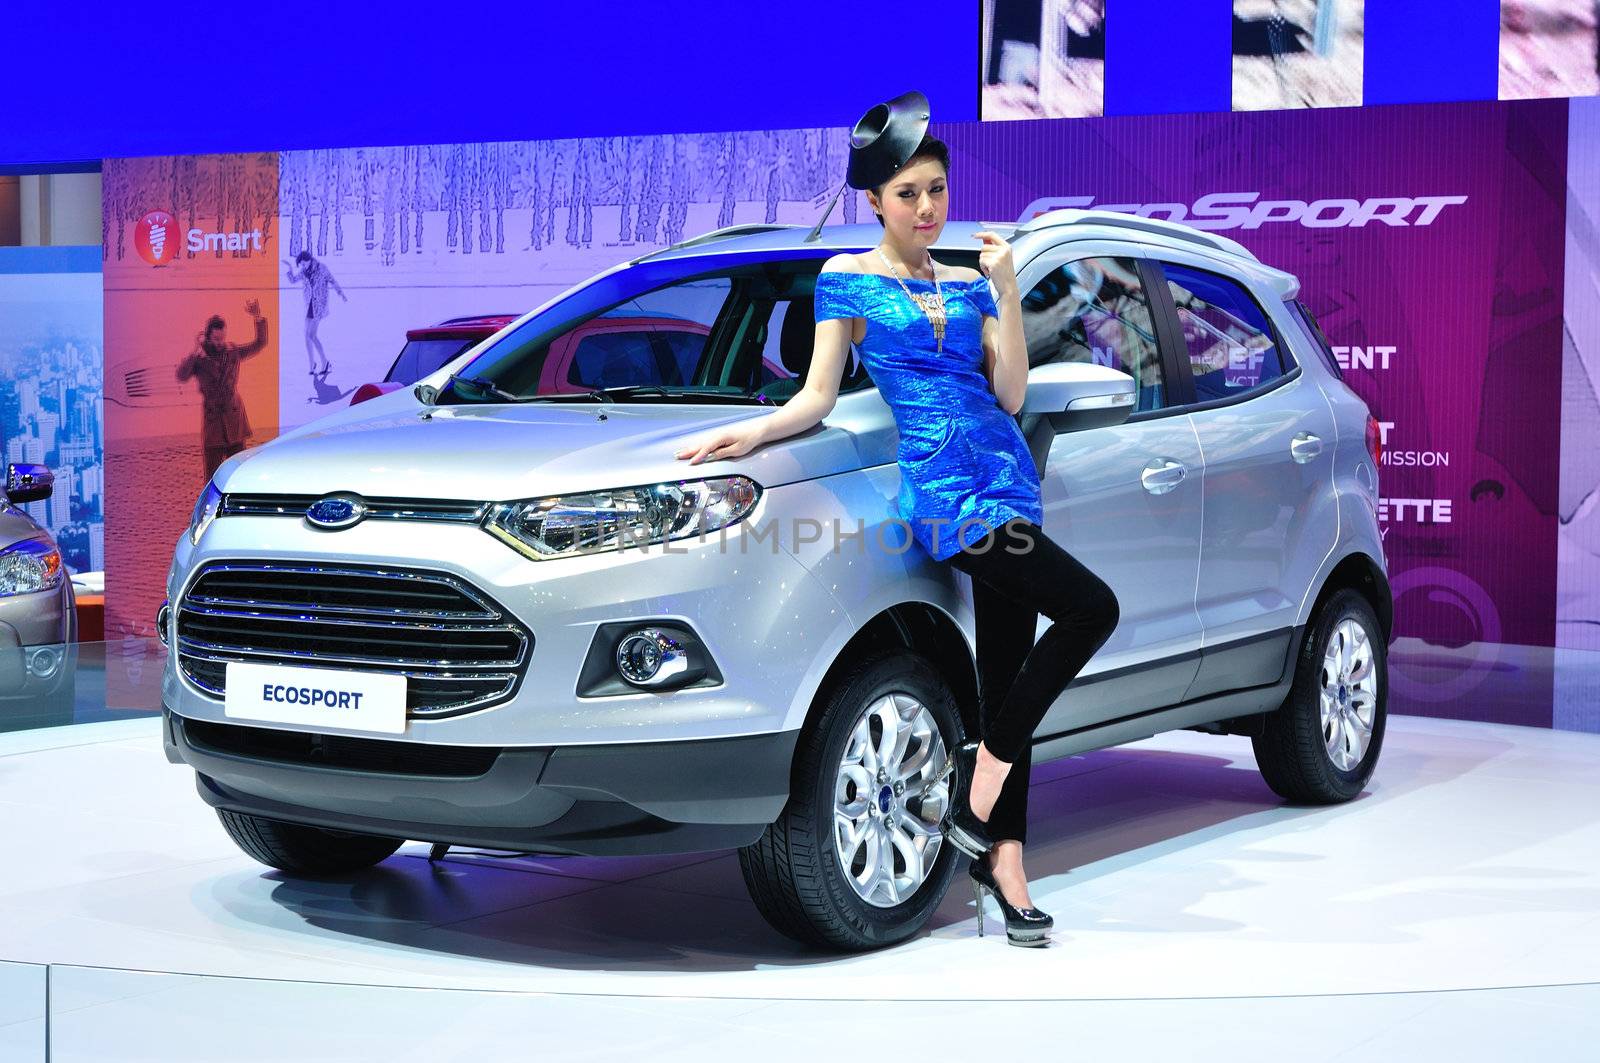 BANGKOK, THAILAND - MAR 30: Ford Eco sport shown at the Bangkok Motor Show 2013 in Bangkok, Thailand on March 30, 2013.